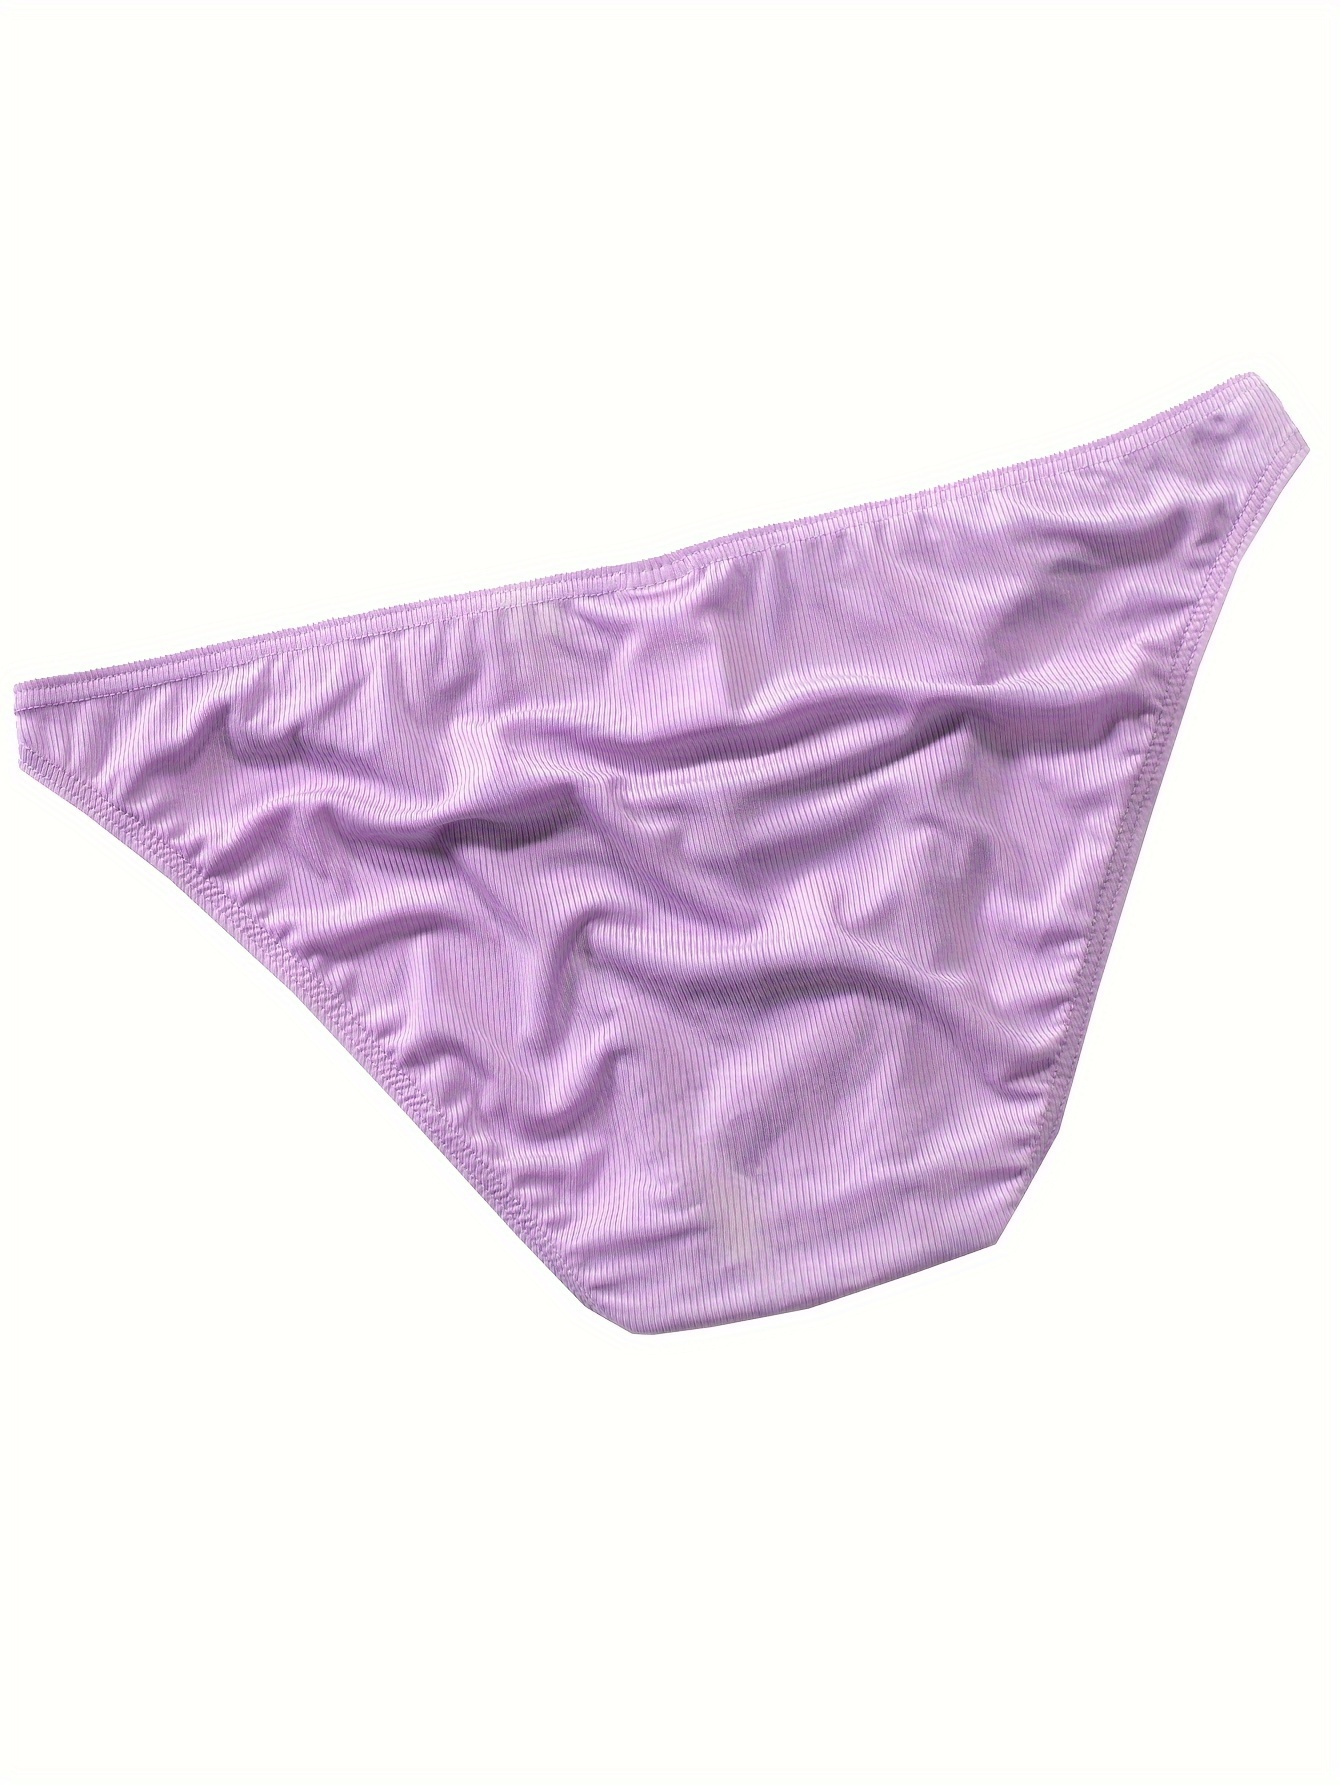 Sexy Briefs, Underwear